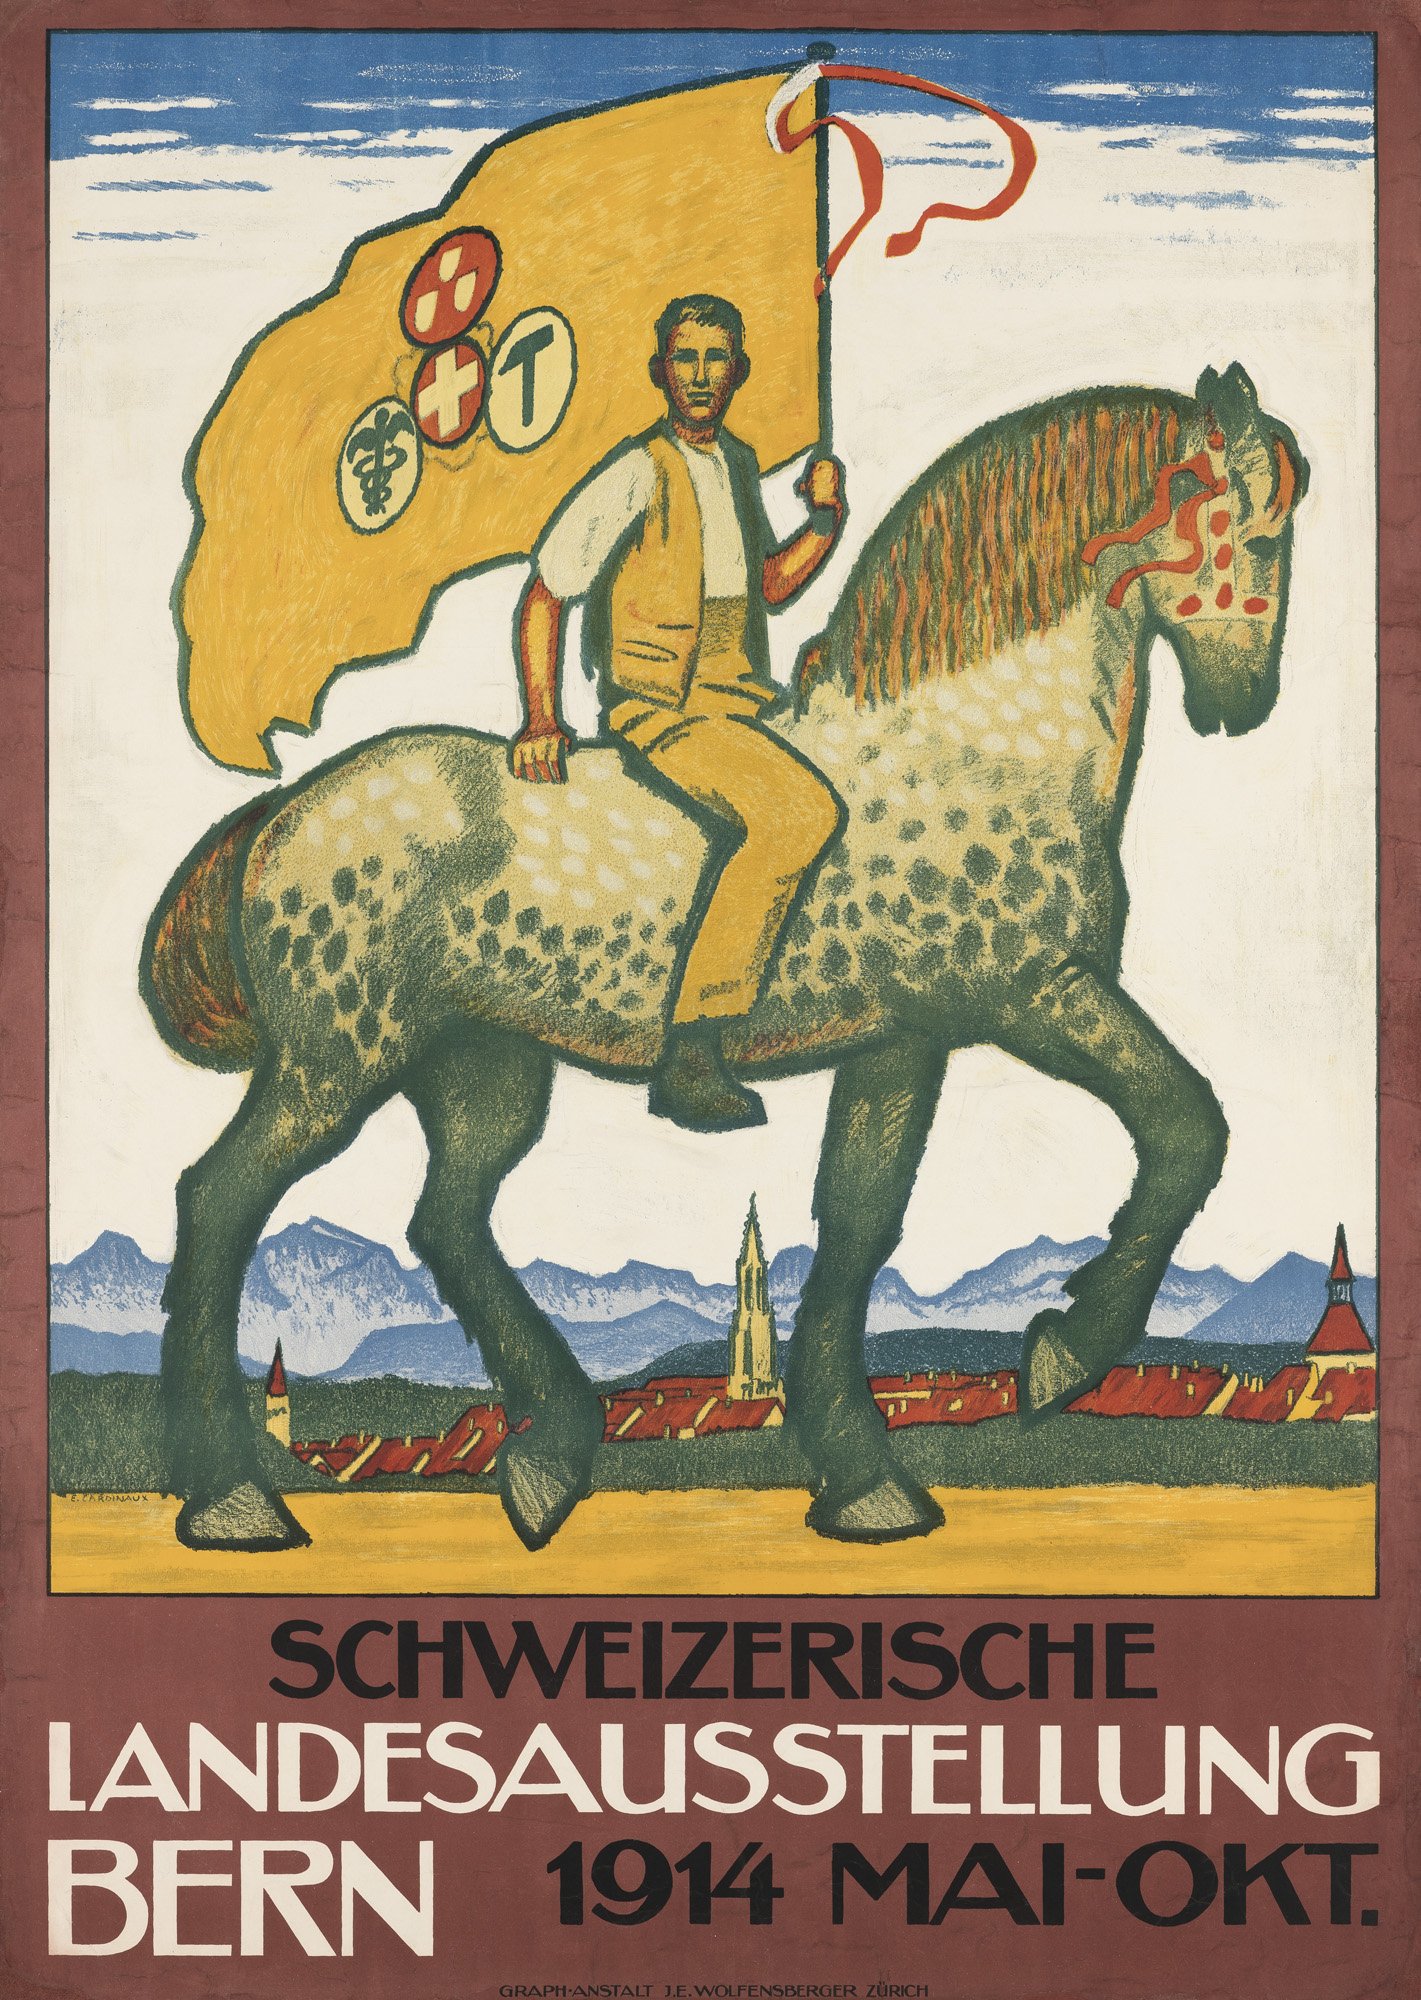 Emil Cardinaux, Schweizerische Landesausstellung Bern (Swiss National Exhibition, Bern), poster, 1914, lithograph, Museum für Gestaltung Zürich, poster collection